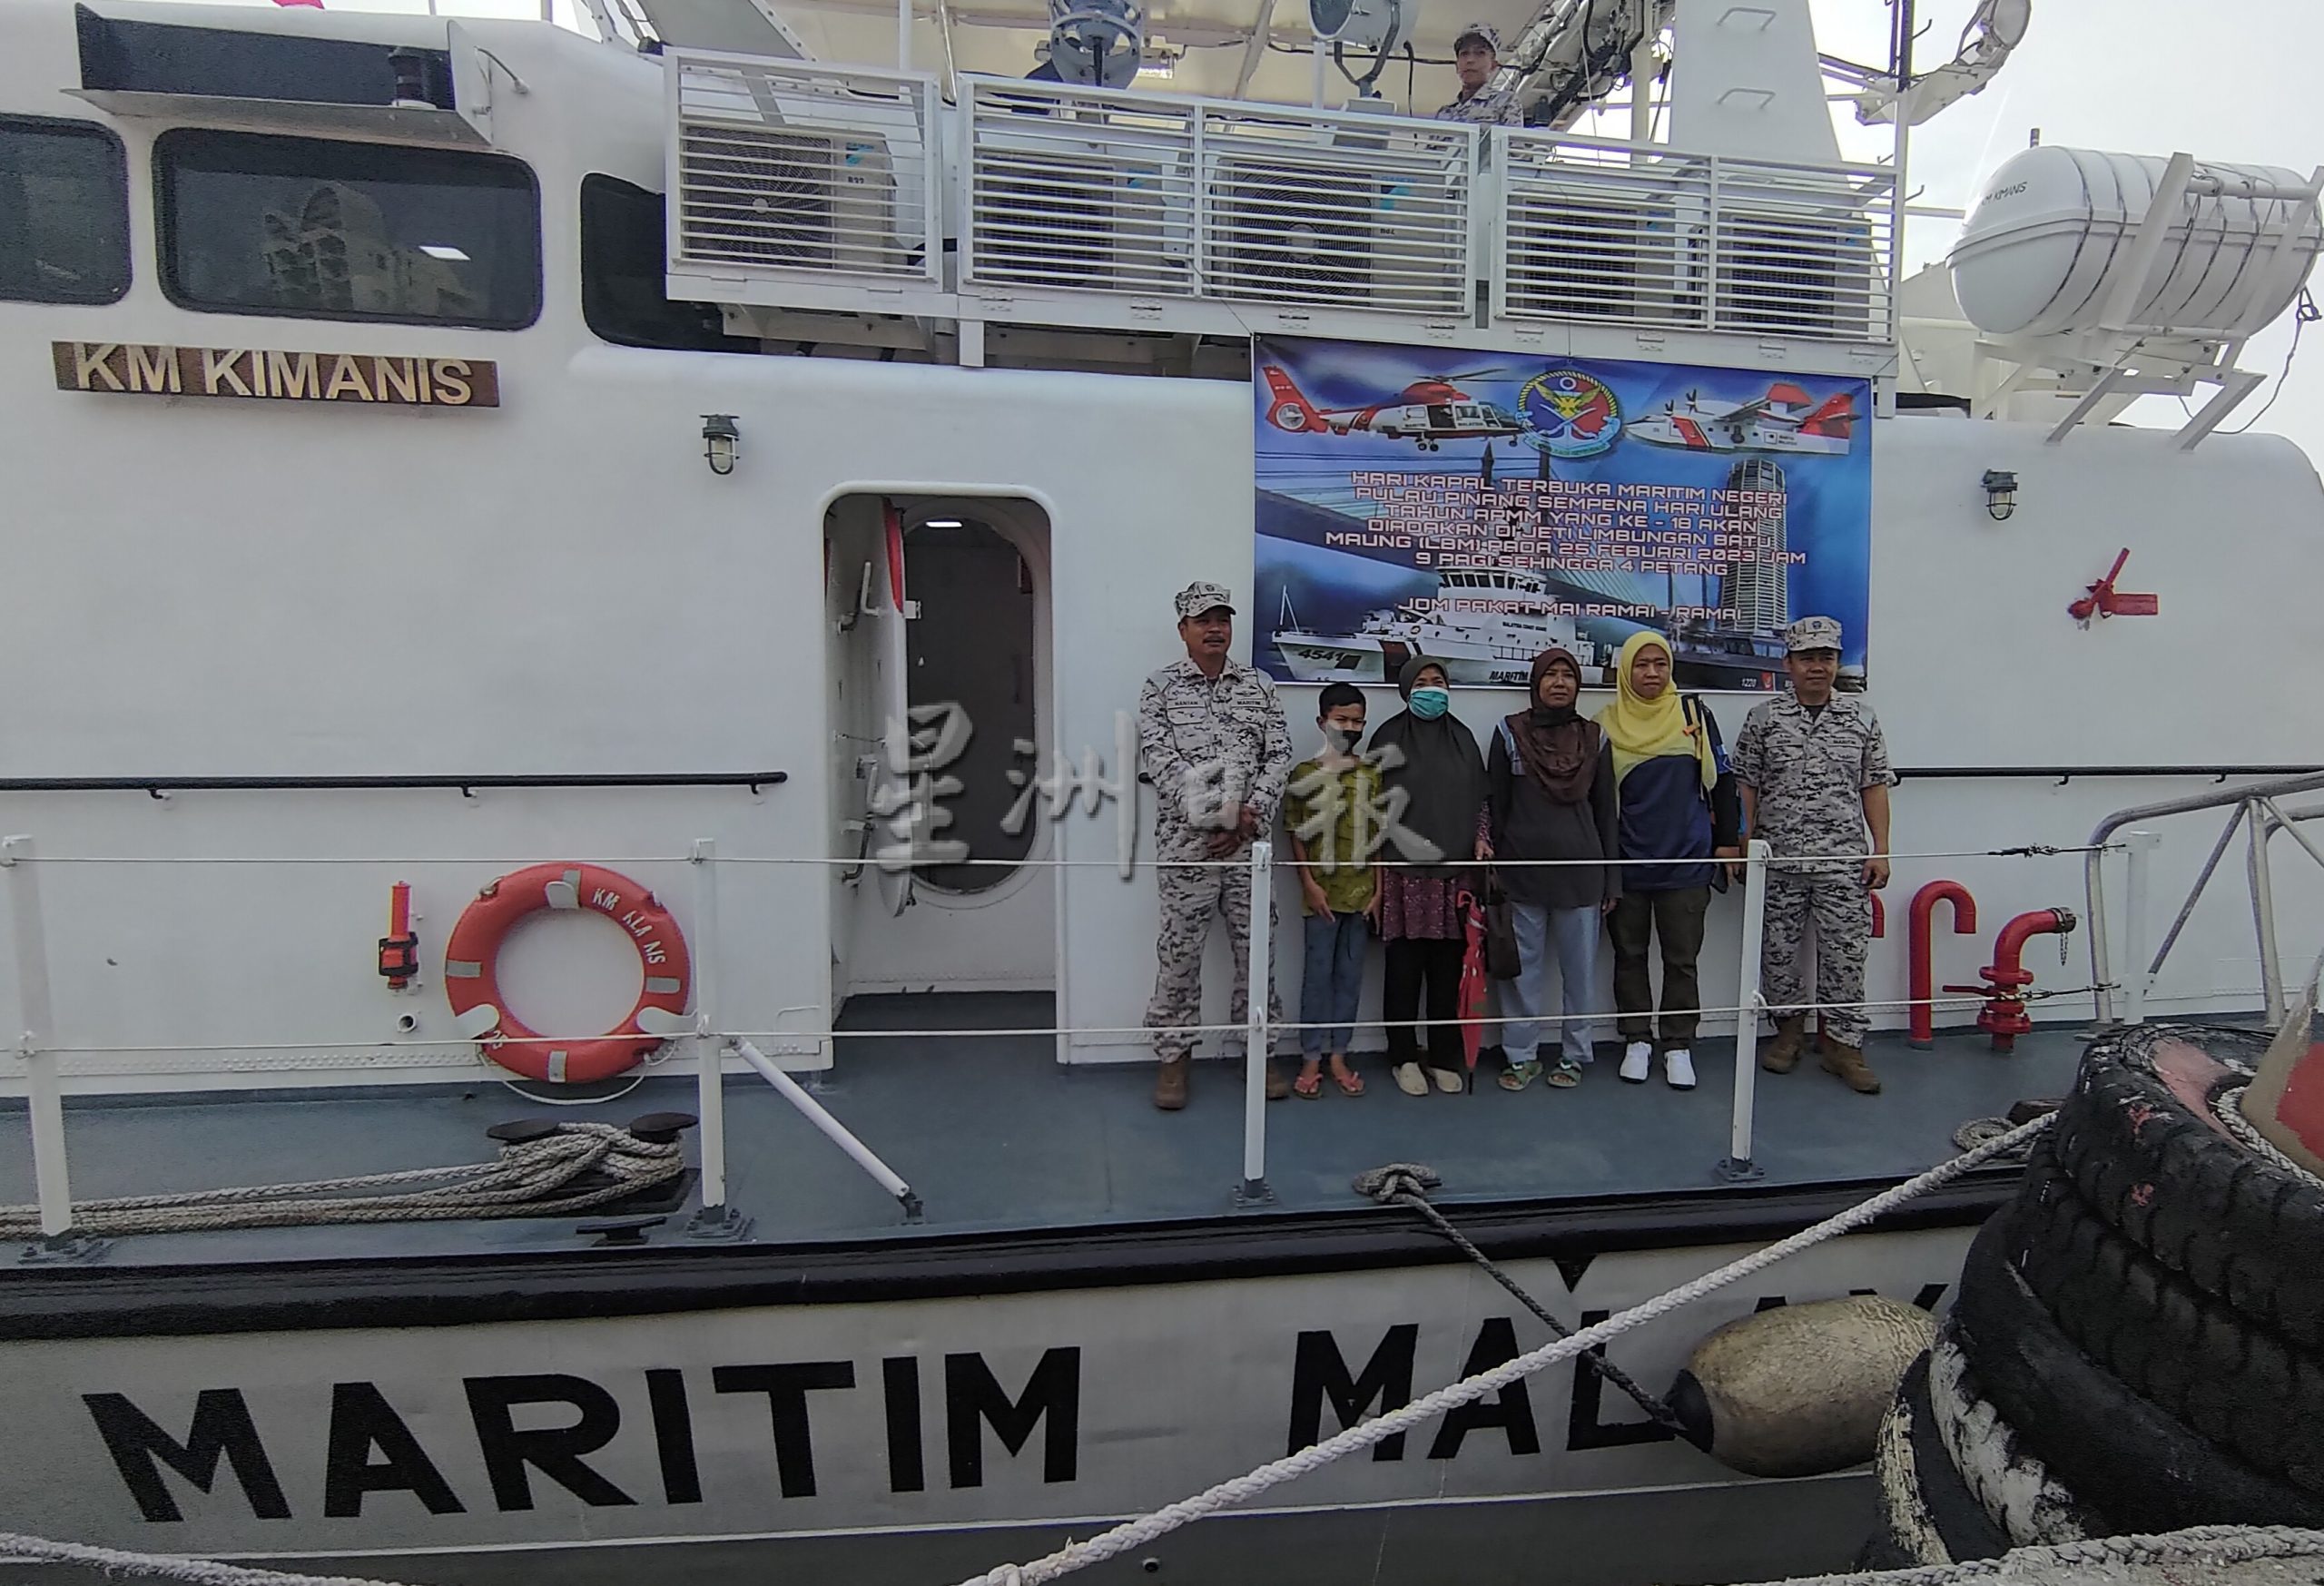 （大北马）海事执法机构槟分局开放日，开放巡逻艇予民众参观